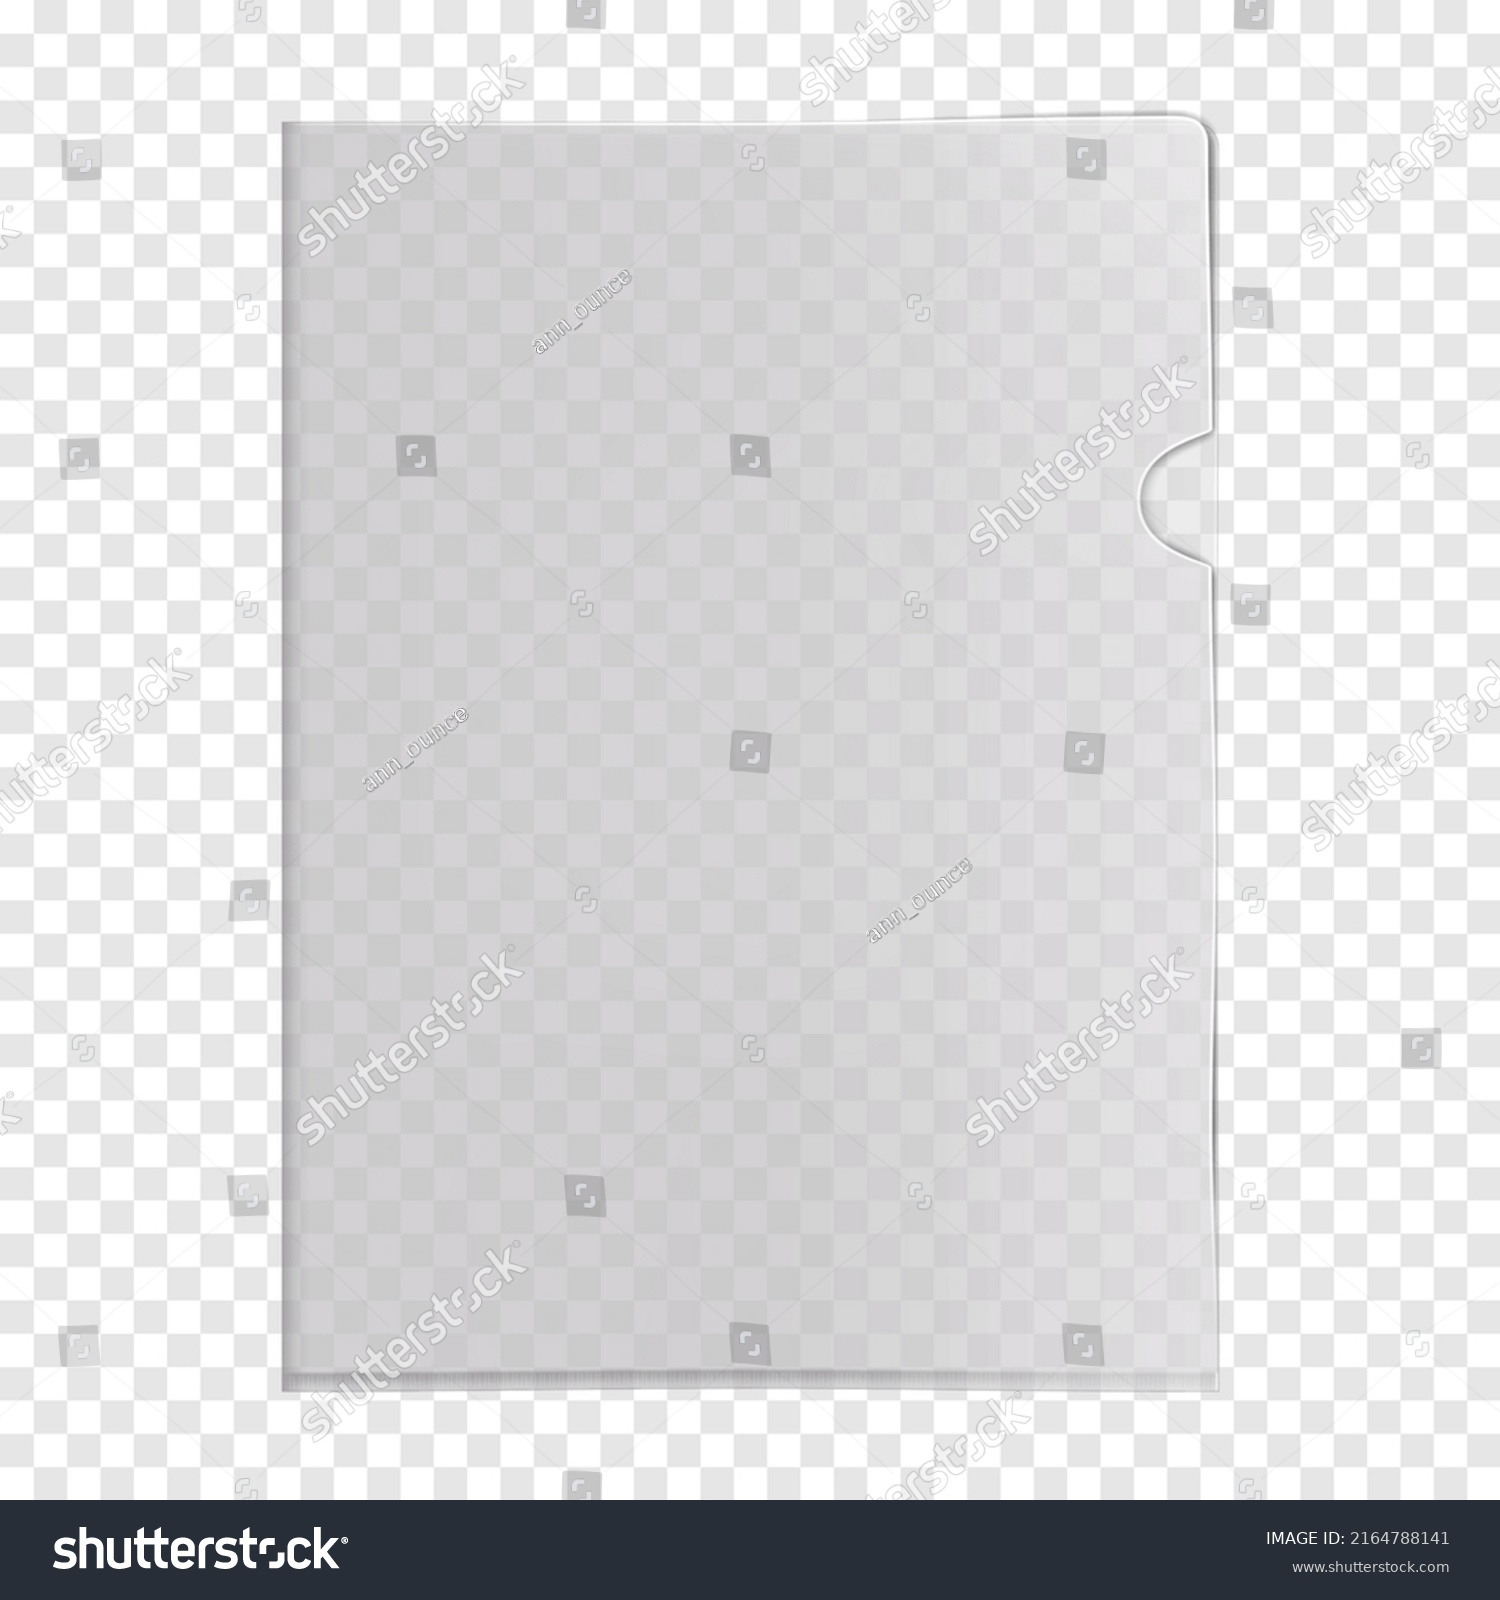 SVG of Clear L-shape plastic file folder pocket on transparent background realistic mock-up. PVC corner document sleeve jacket vector mockup svg